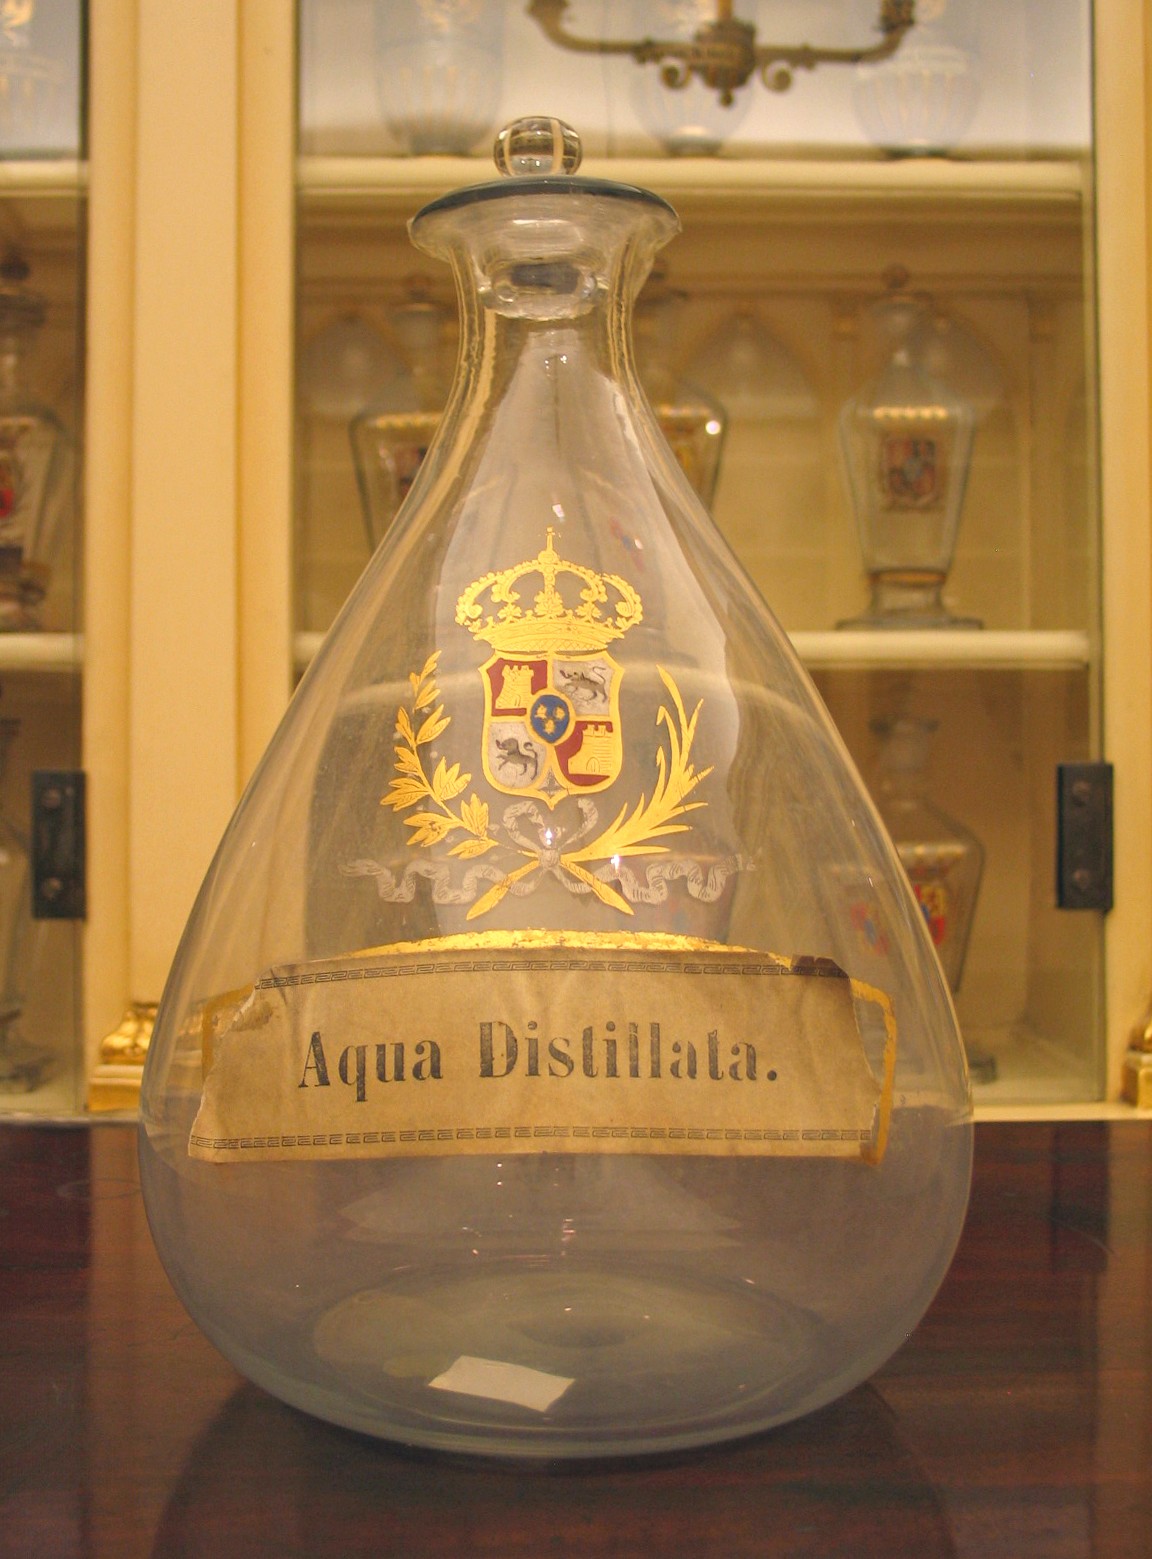 Aqua-distillata